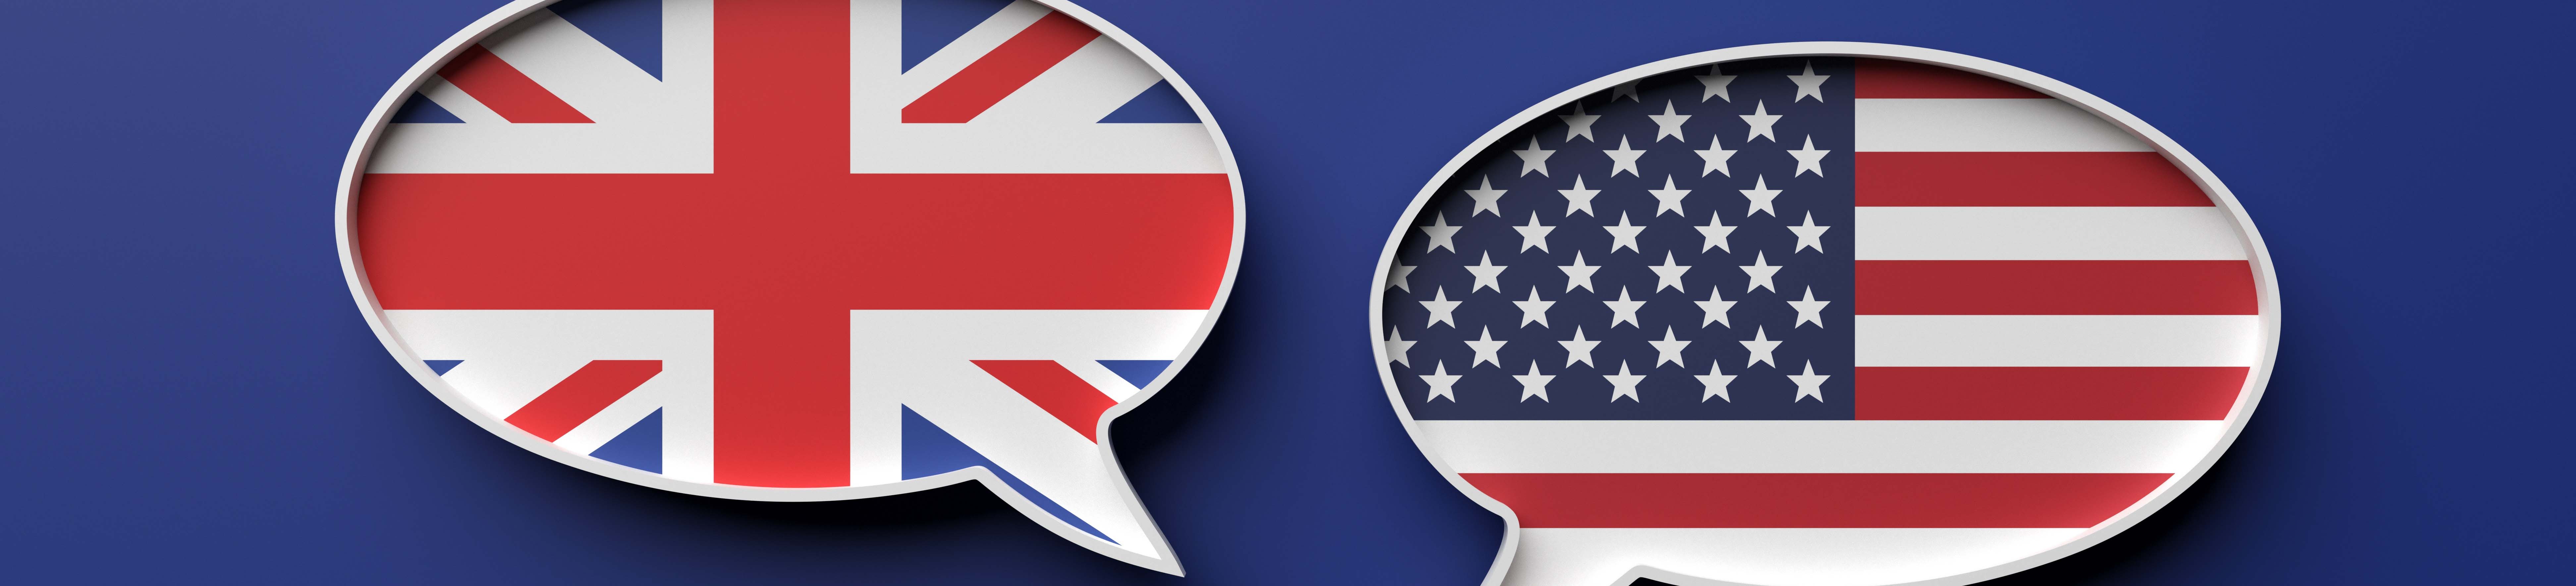 Langue USA : ce que vous devez savoir avant de partir aux Etats-Unis !